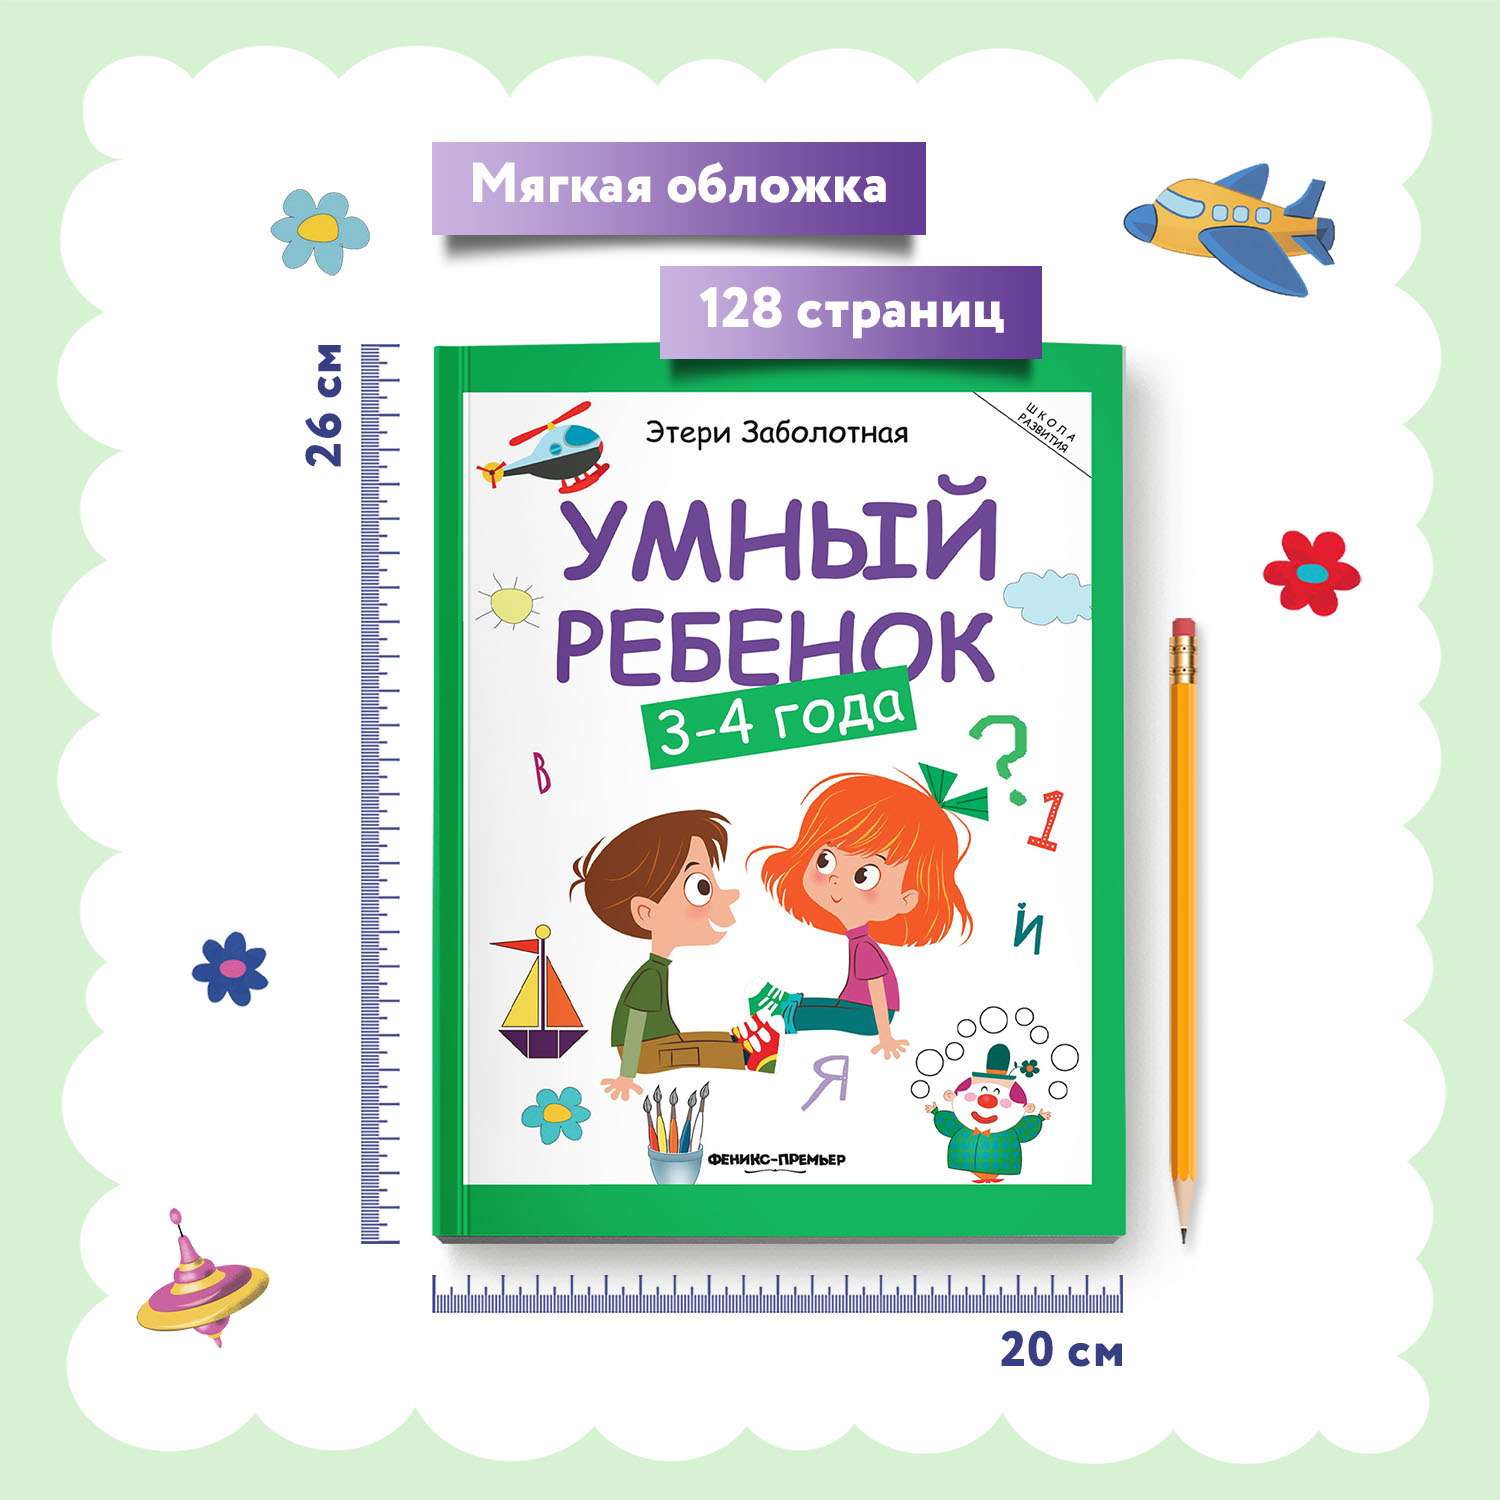 Книга Феникс Премьер Умный ребенок 3-4 года. Развитие ребенка - фото 6